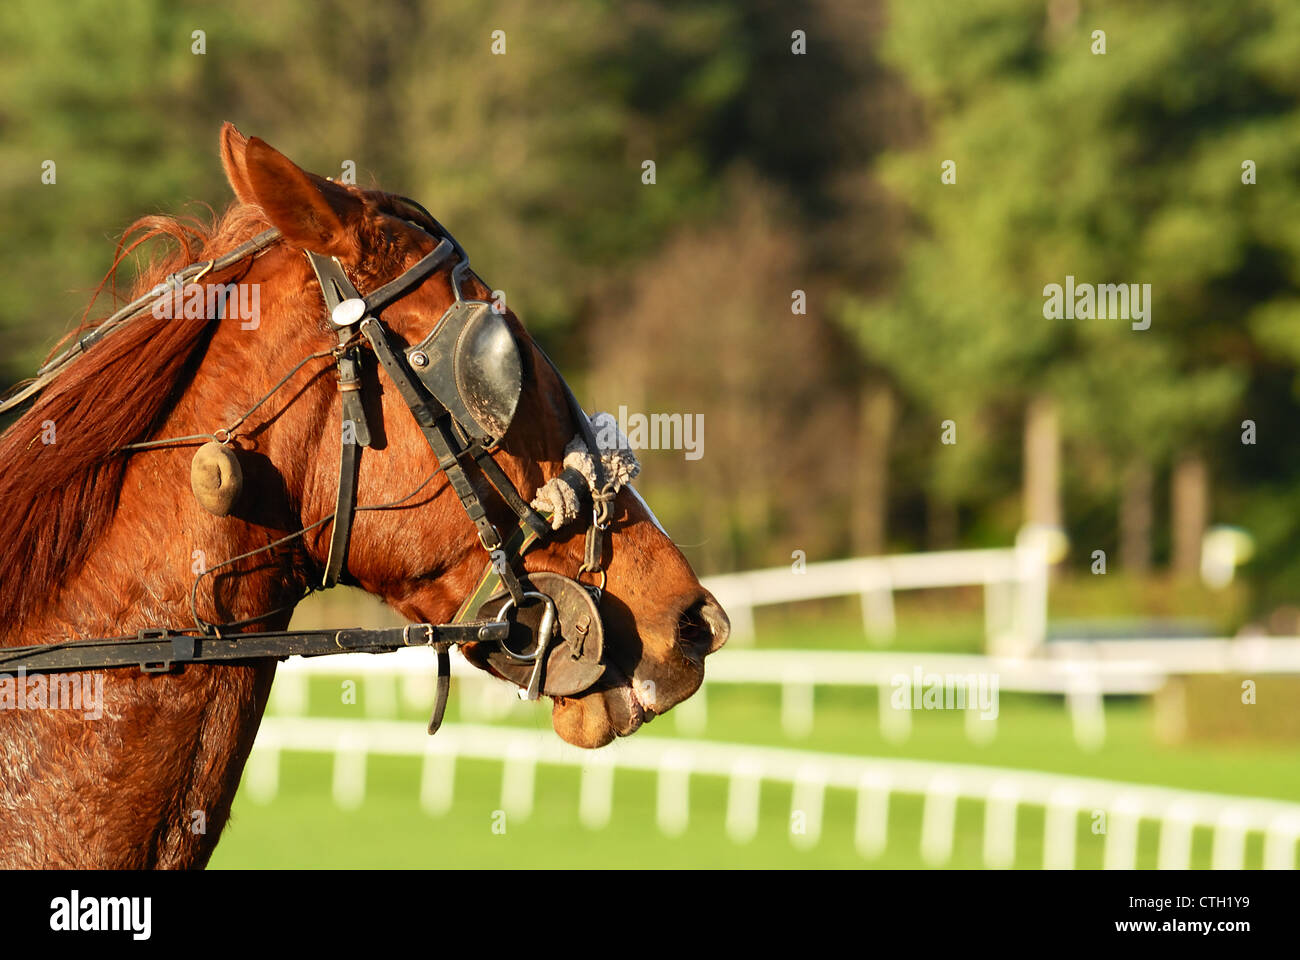 Carreras de caballos después de la carrera,deporte ecuestre Foto de stock